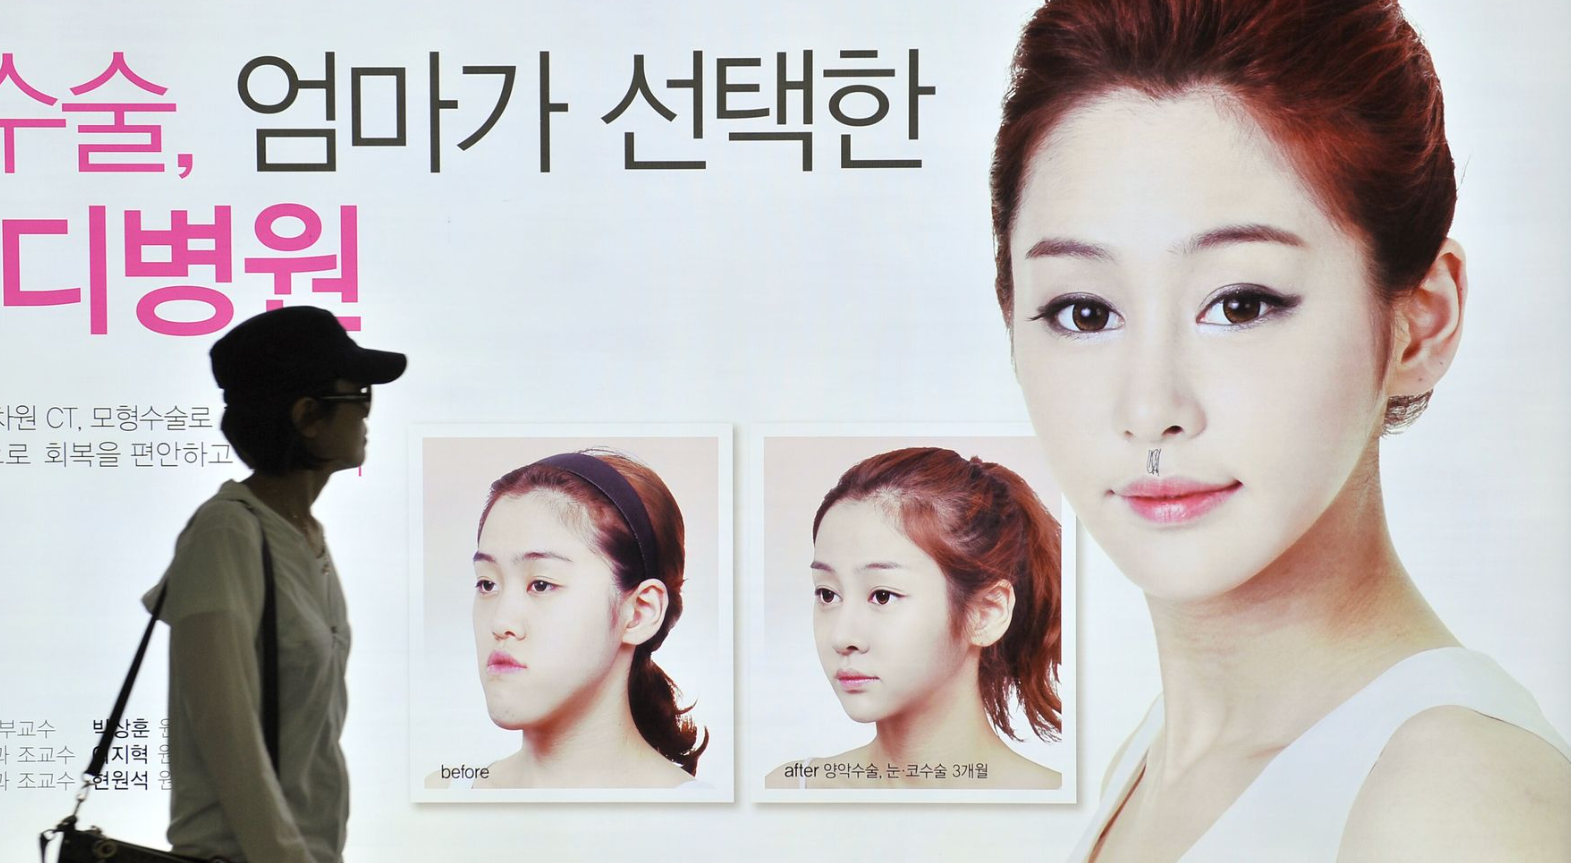 Quá mệt mỏi với chuẩn đẹp cực đoan, phụ nữ Hàn đứng lên phá vỡ định kiến xã hội - Ảnh 3.